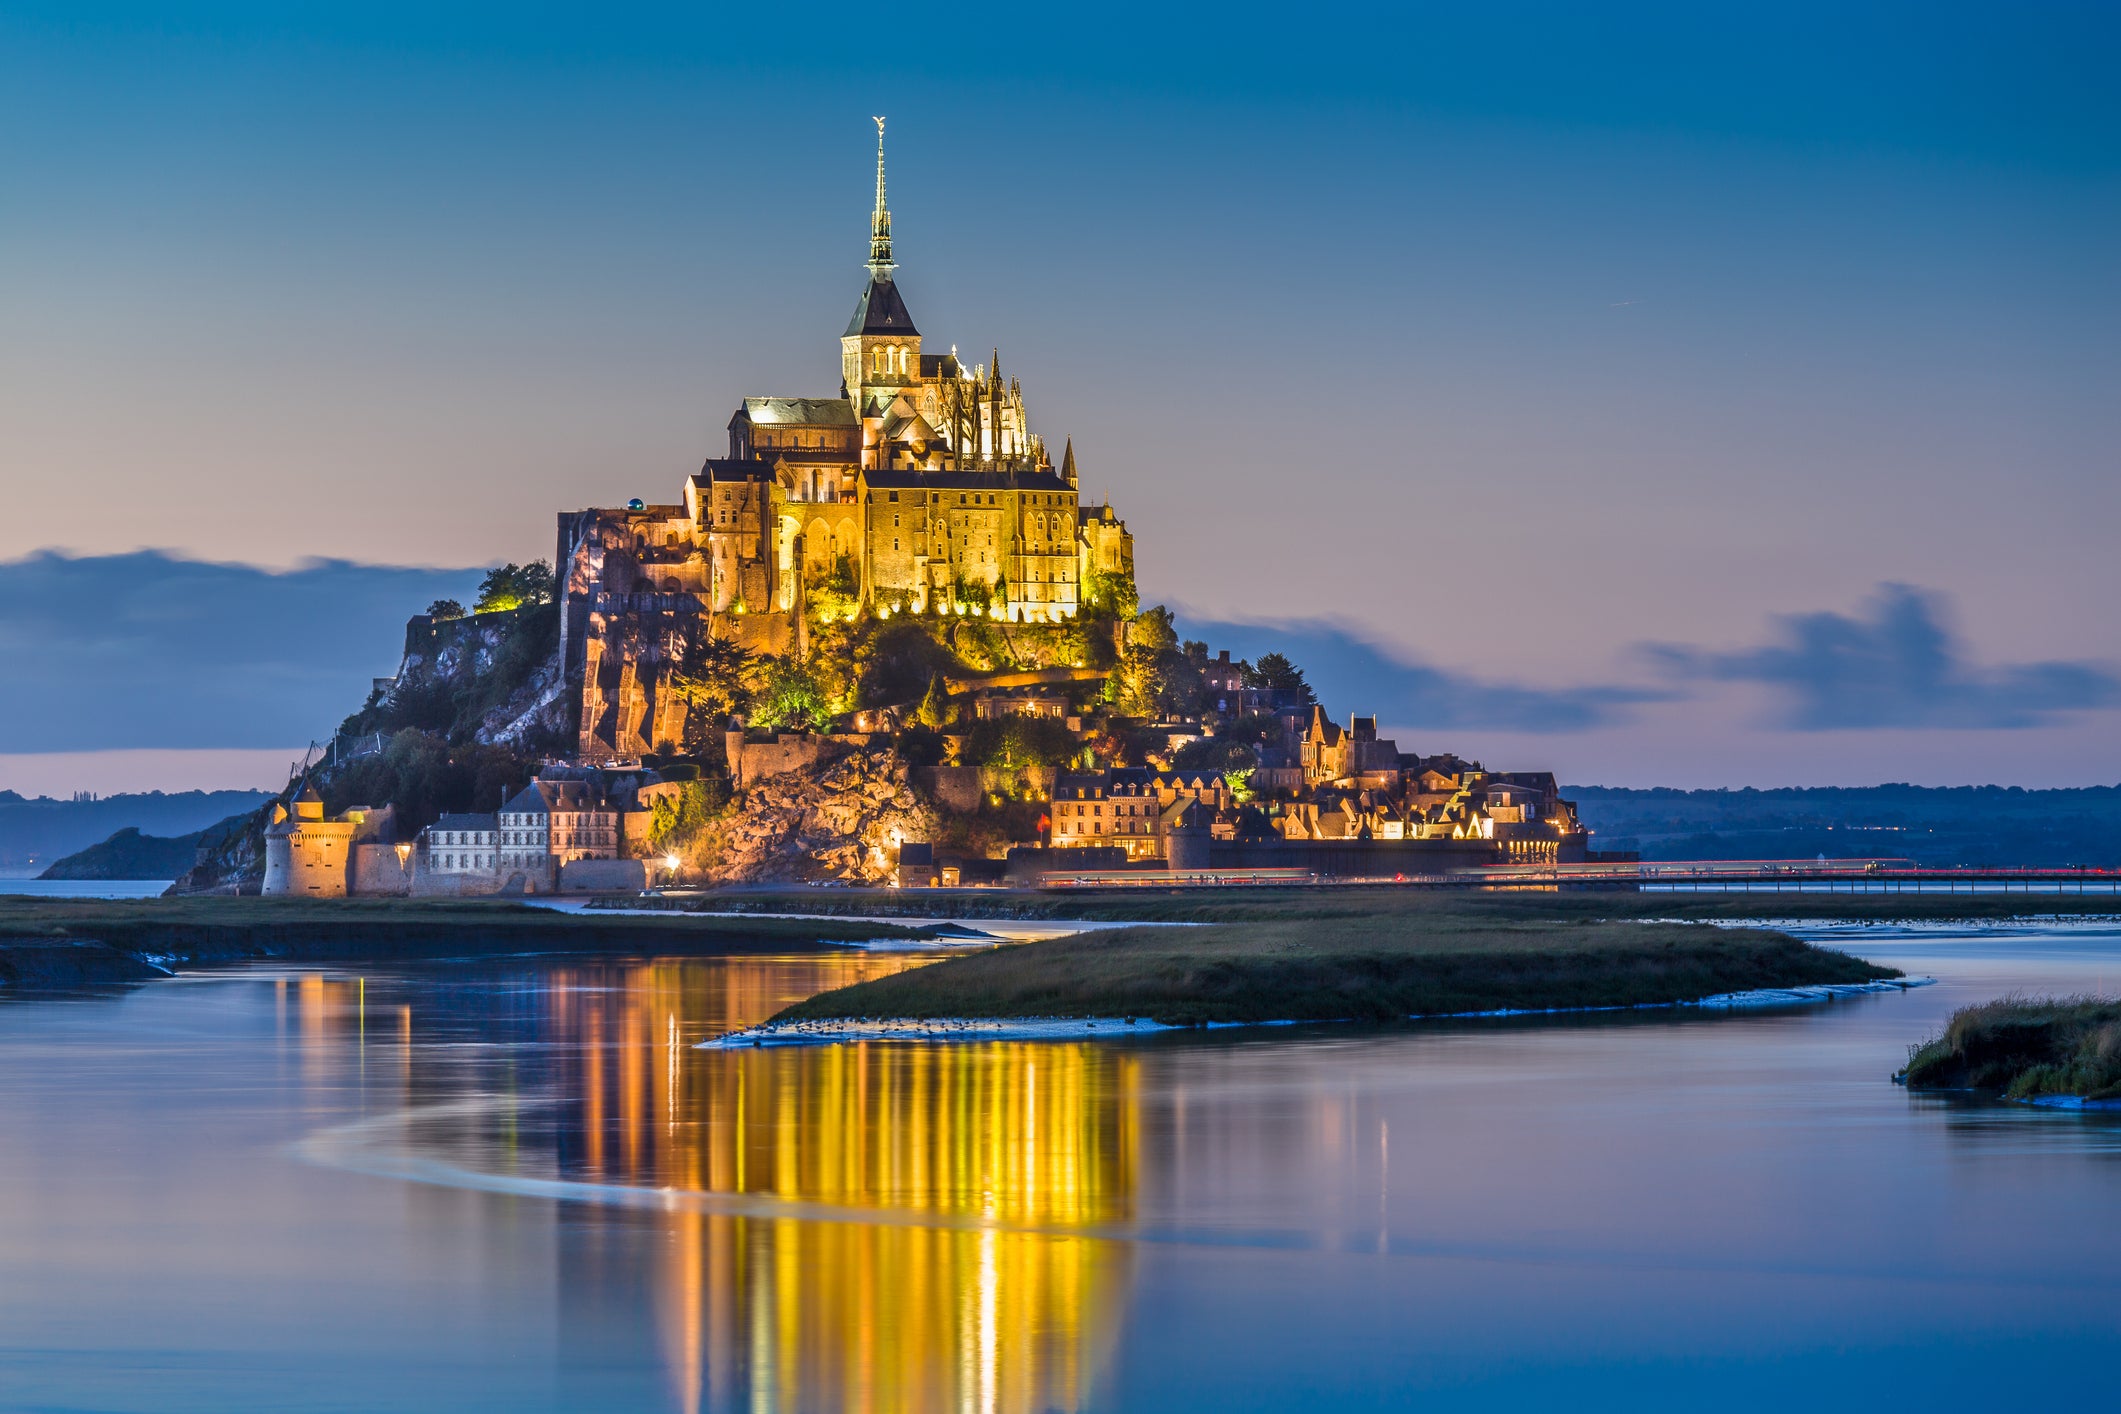 Le Mont Saint Michel, on France's northern coast